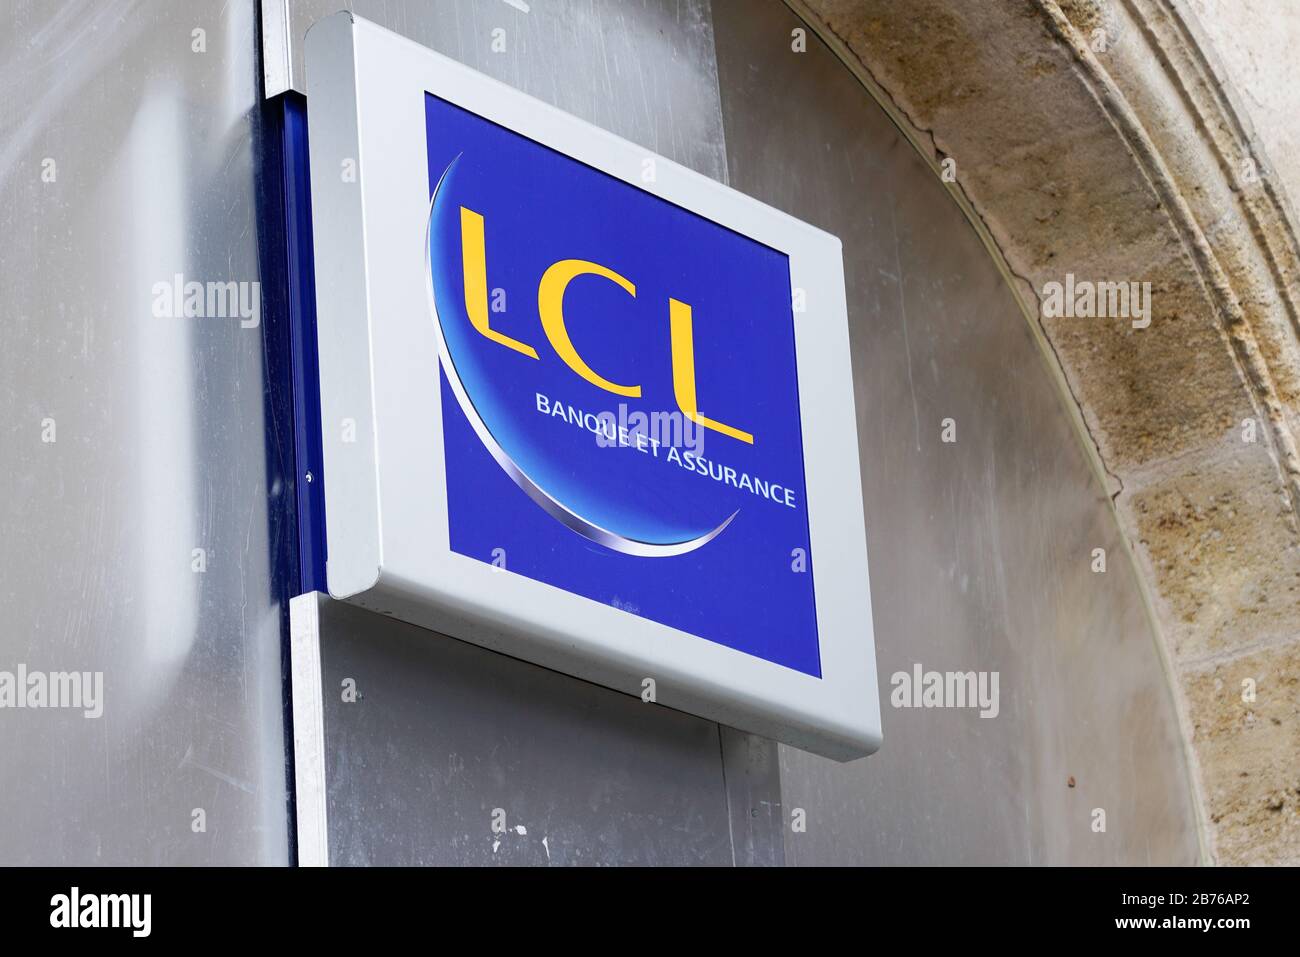 Bordeaux , Aquitaine / France - 10 28 2019 : lcl sign logo Banque et assurance le credit Lyonnais french bank signage store Stock Photo